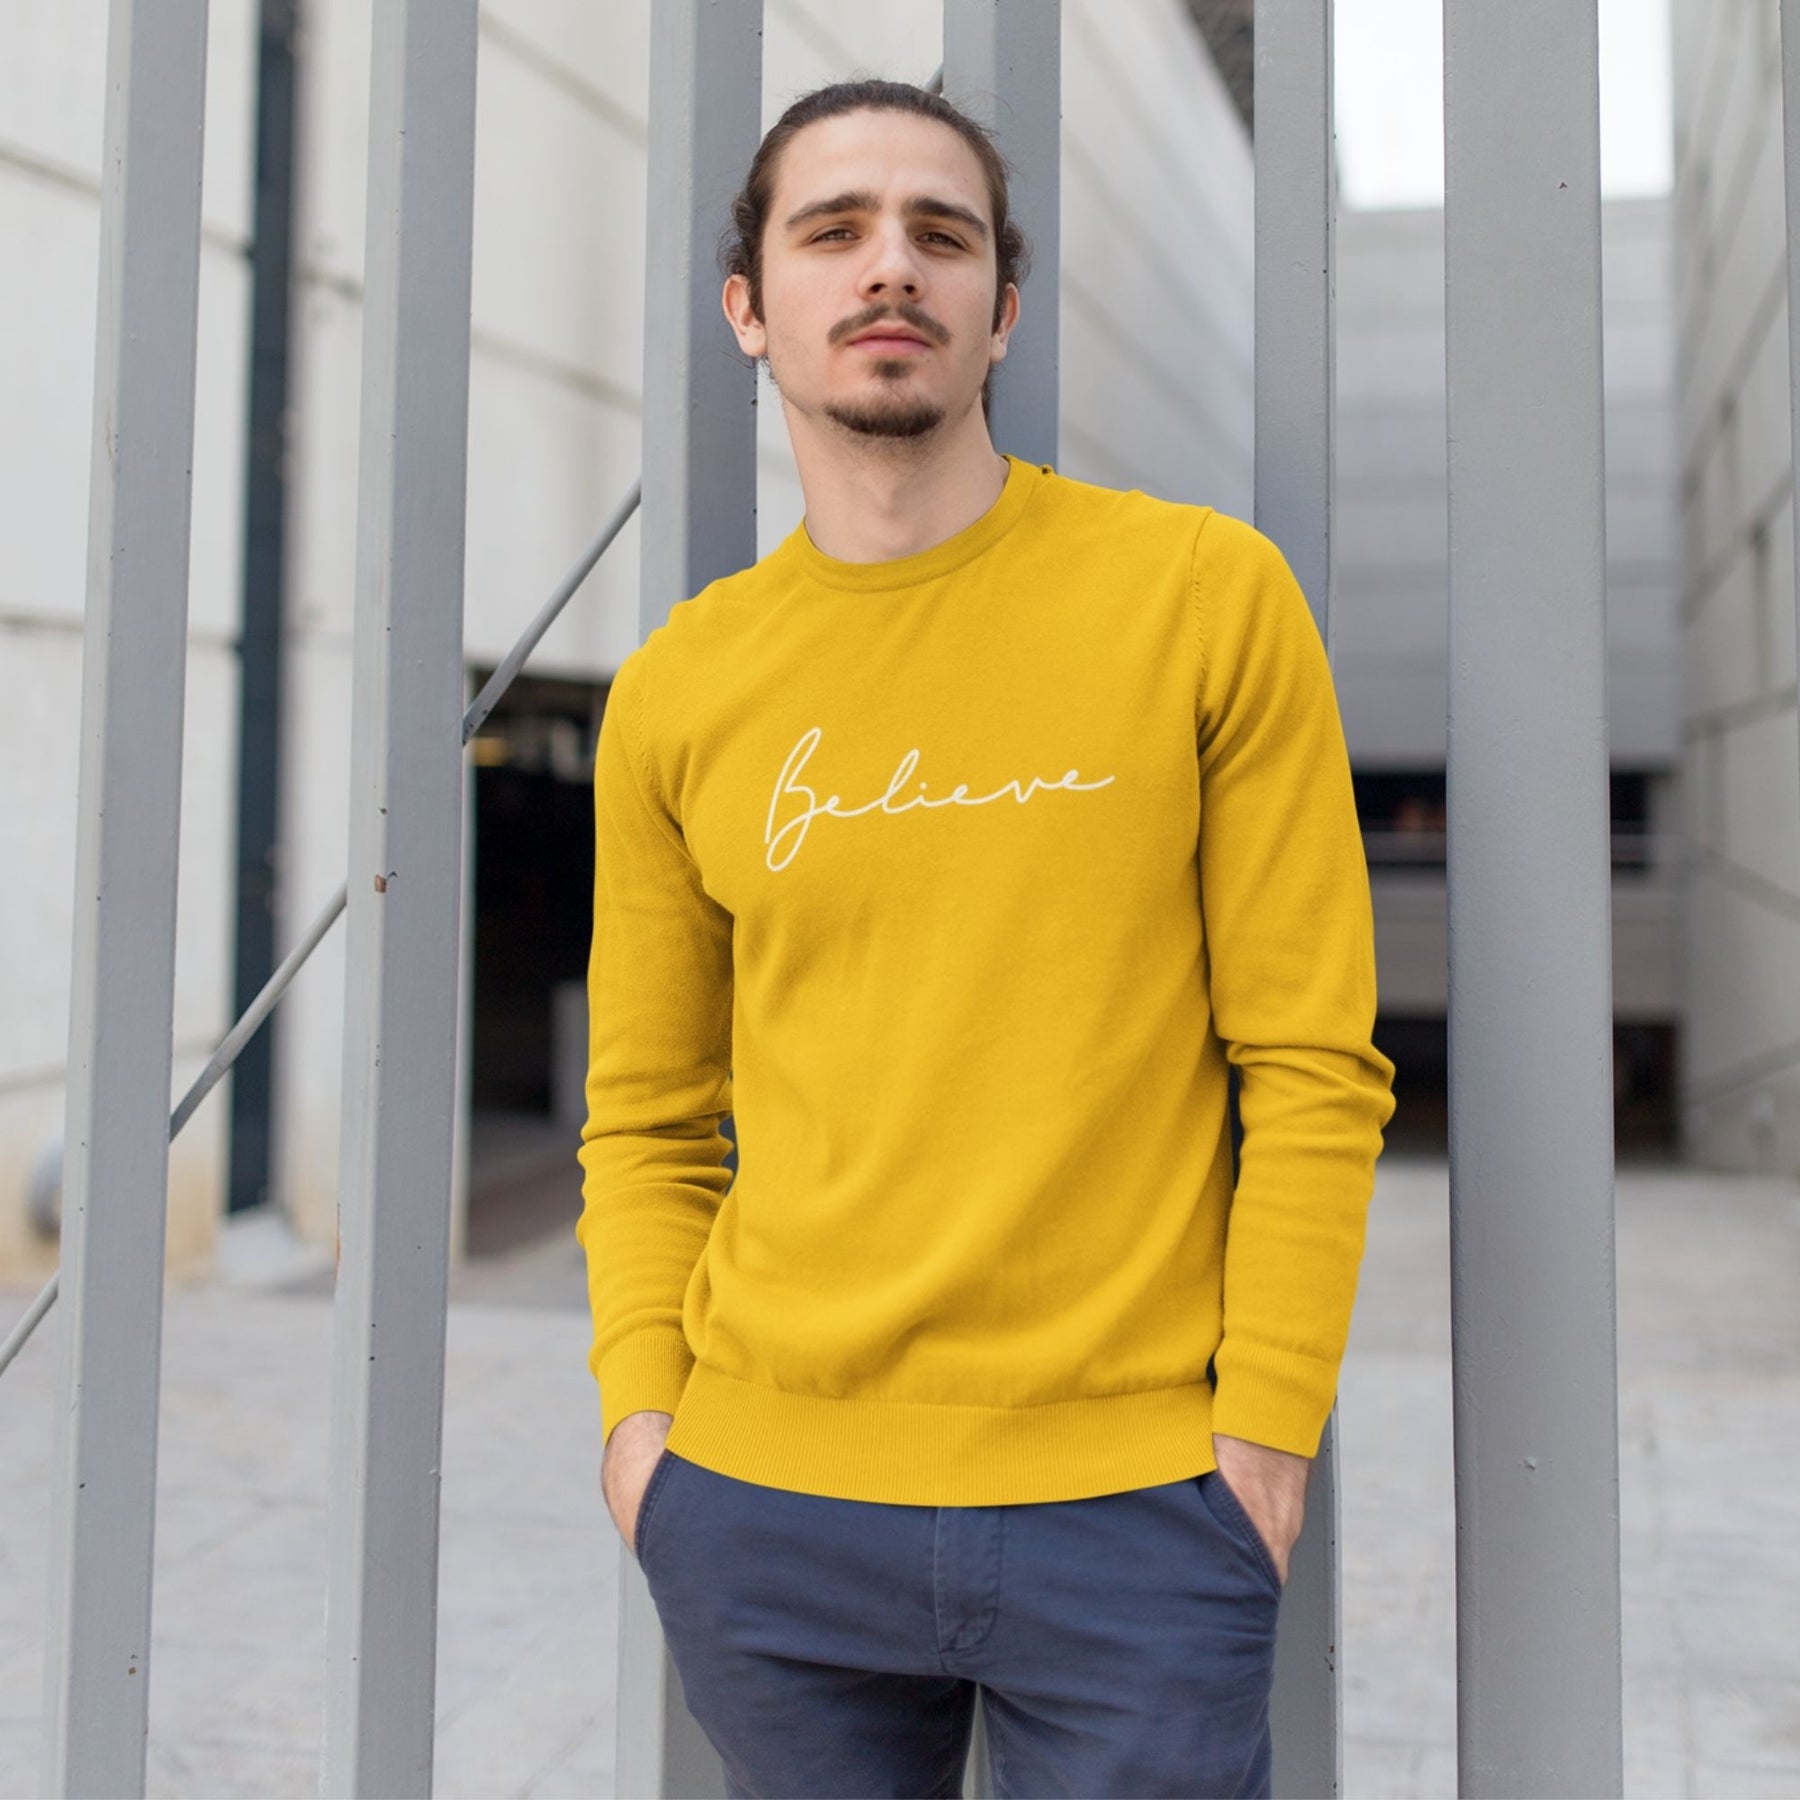 believe-cotton-printed-unisex-golden-yellow-men-model-sweatshirt-gogirgit-com